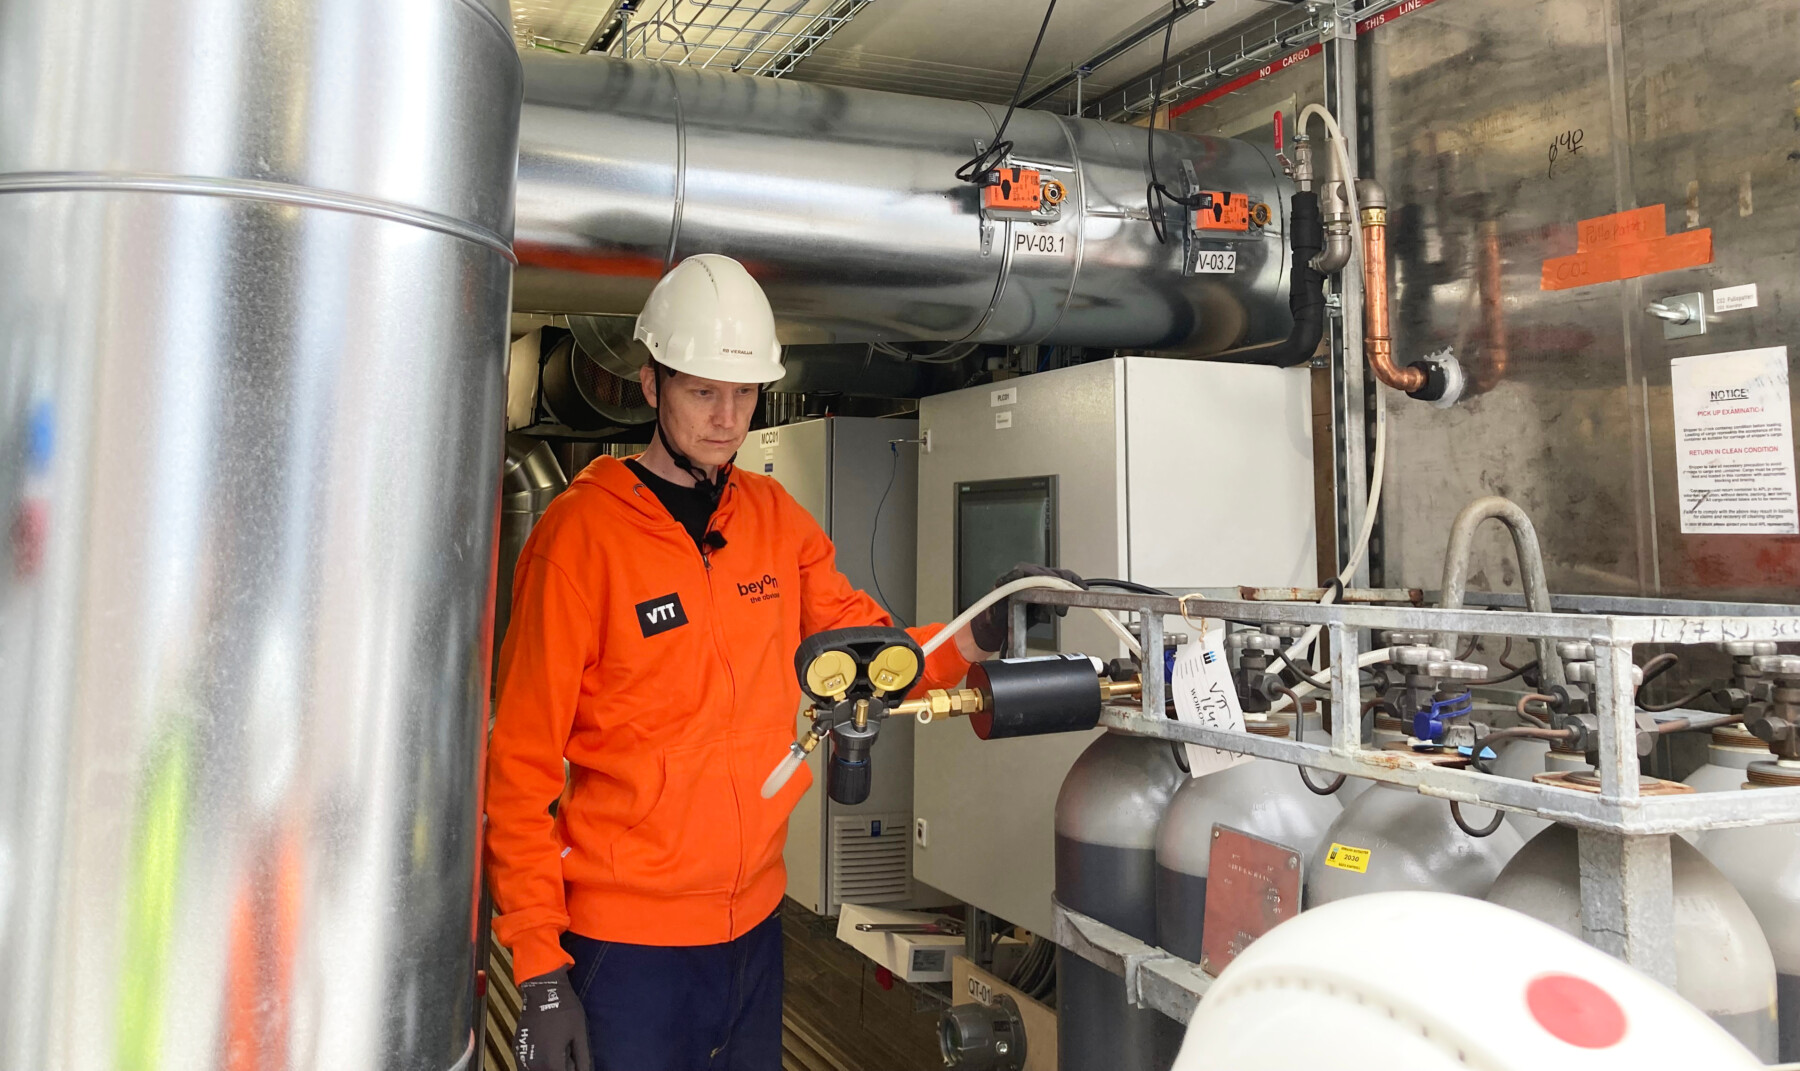 Un hombre que lleva un casco y una chaqueta de colores brillantes inspecciona una instalación industrial repleta de tuberías, depósitos y válvulas.